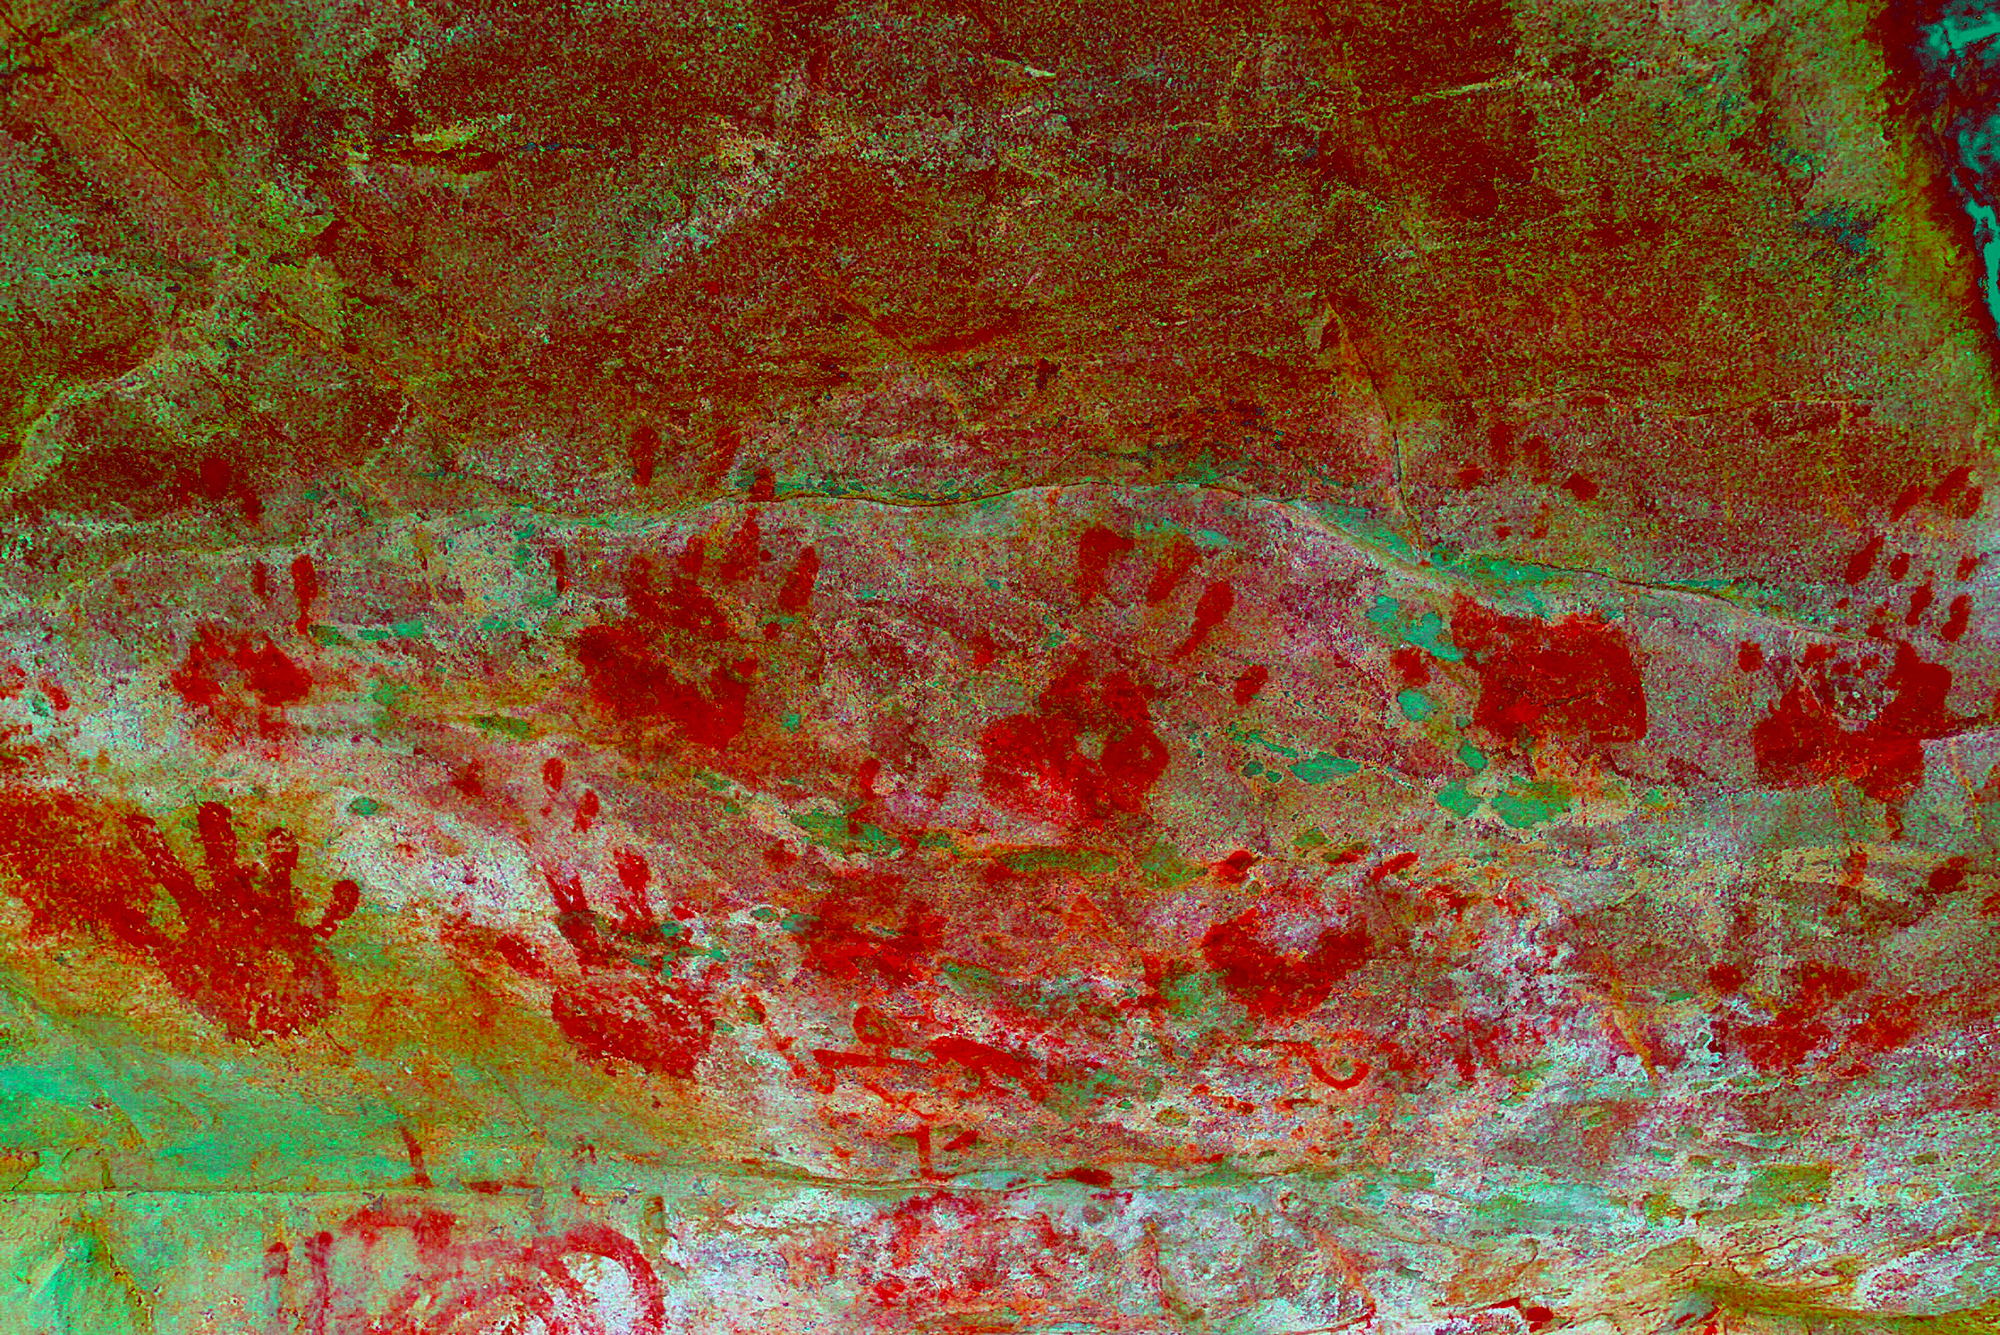 Recent Handprints in red